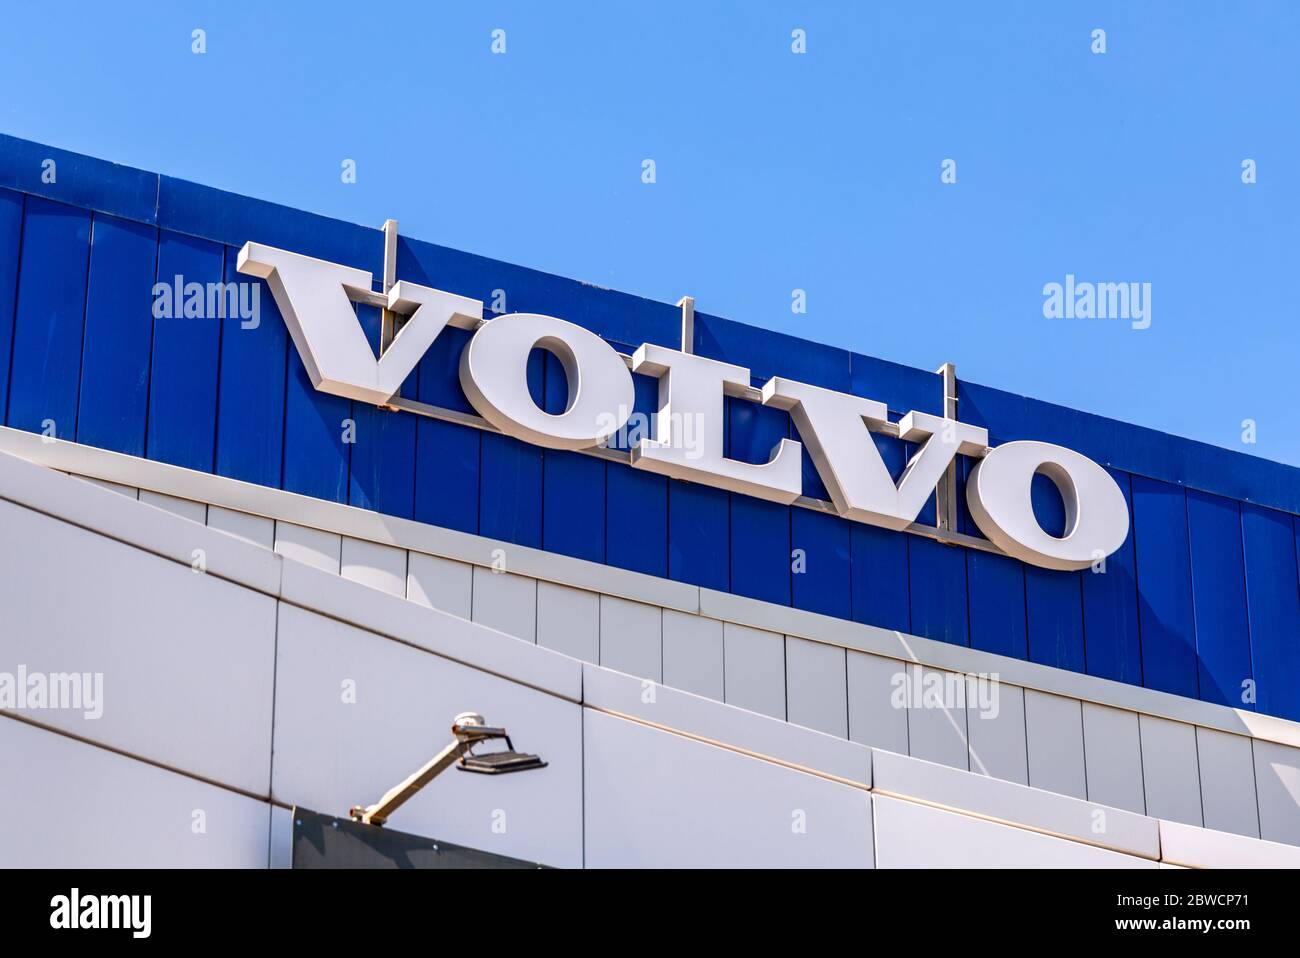 Samara, Russland - 29. Mai 2020: Volvo Händler unterzeichnen auf dem Büro des offiziellen Händlers. Volvo ist ein schwedisches multinationales Autohersteller-Unternehmen Stockfoto